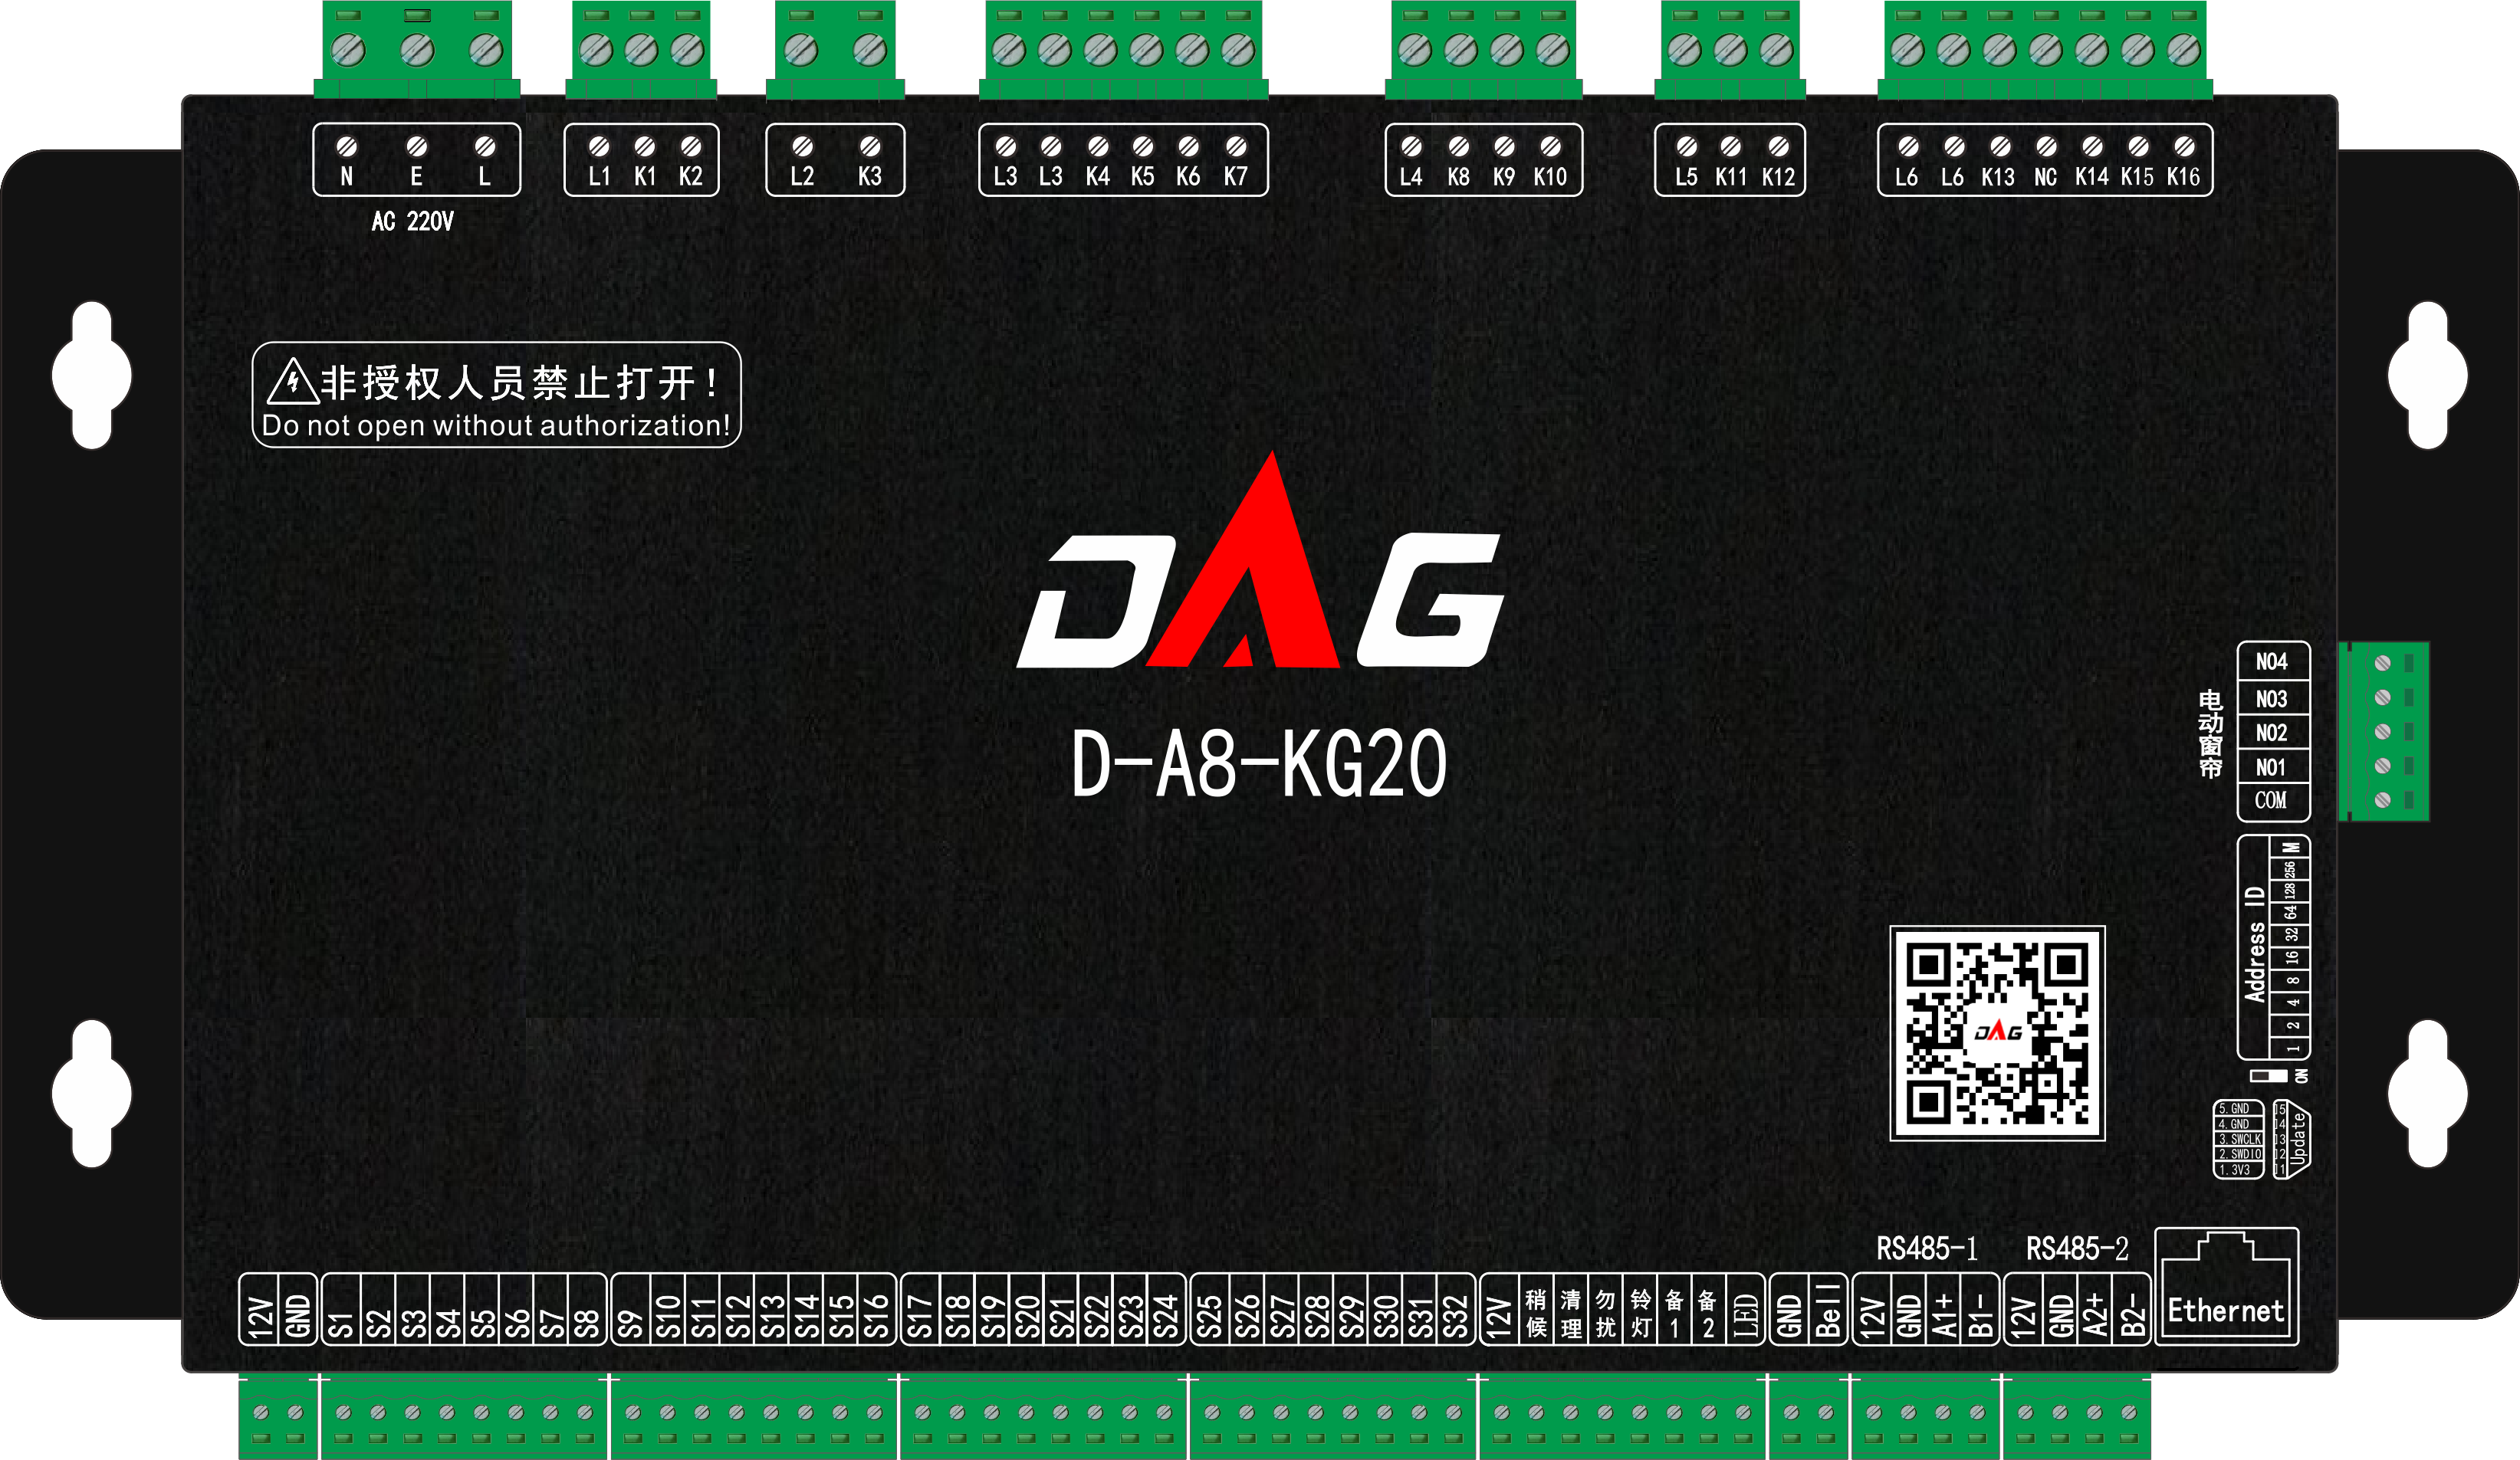 D-A8-KG20